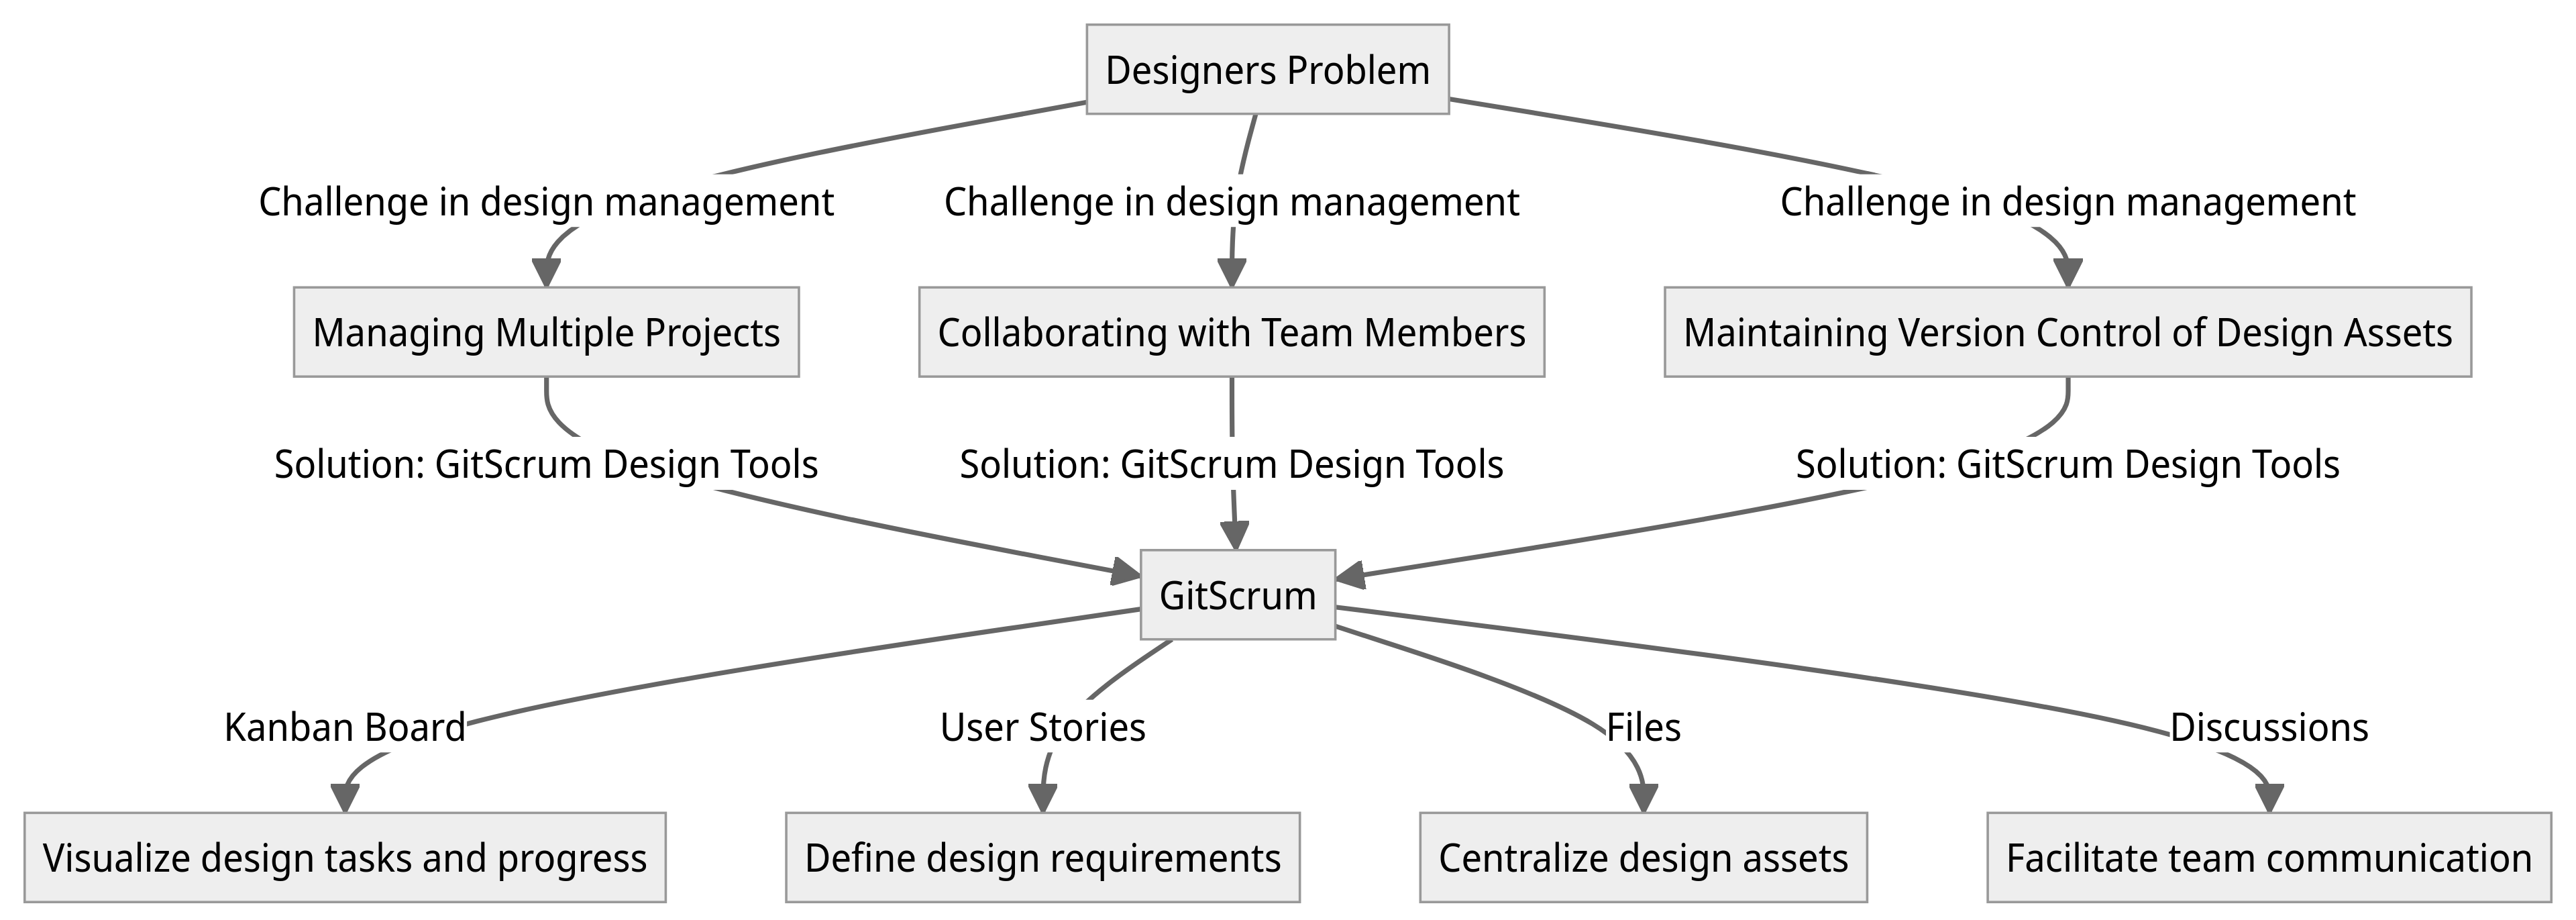 Diagram - Designers